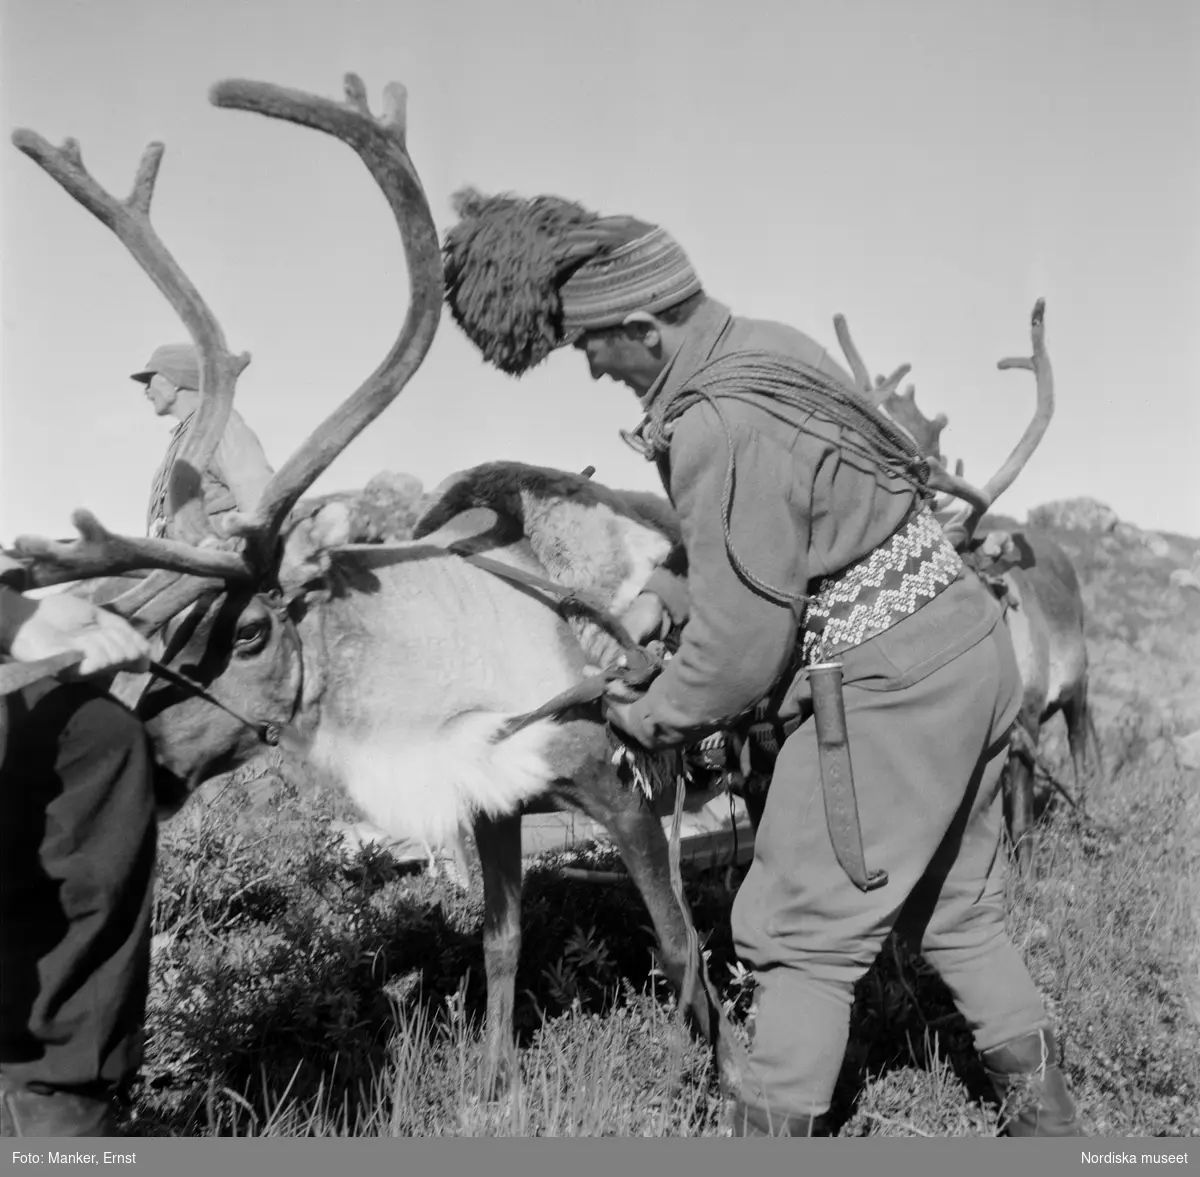 Motiv från Rauskasjaure. Härkarna sadlas för fortsatt färd. På bilden ses Per Henning Nutti iförd modern lumberjacka och byxor kombinerat med traditionell samisk mössa och bälte.